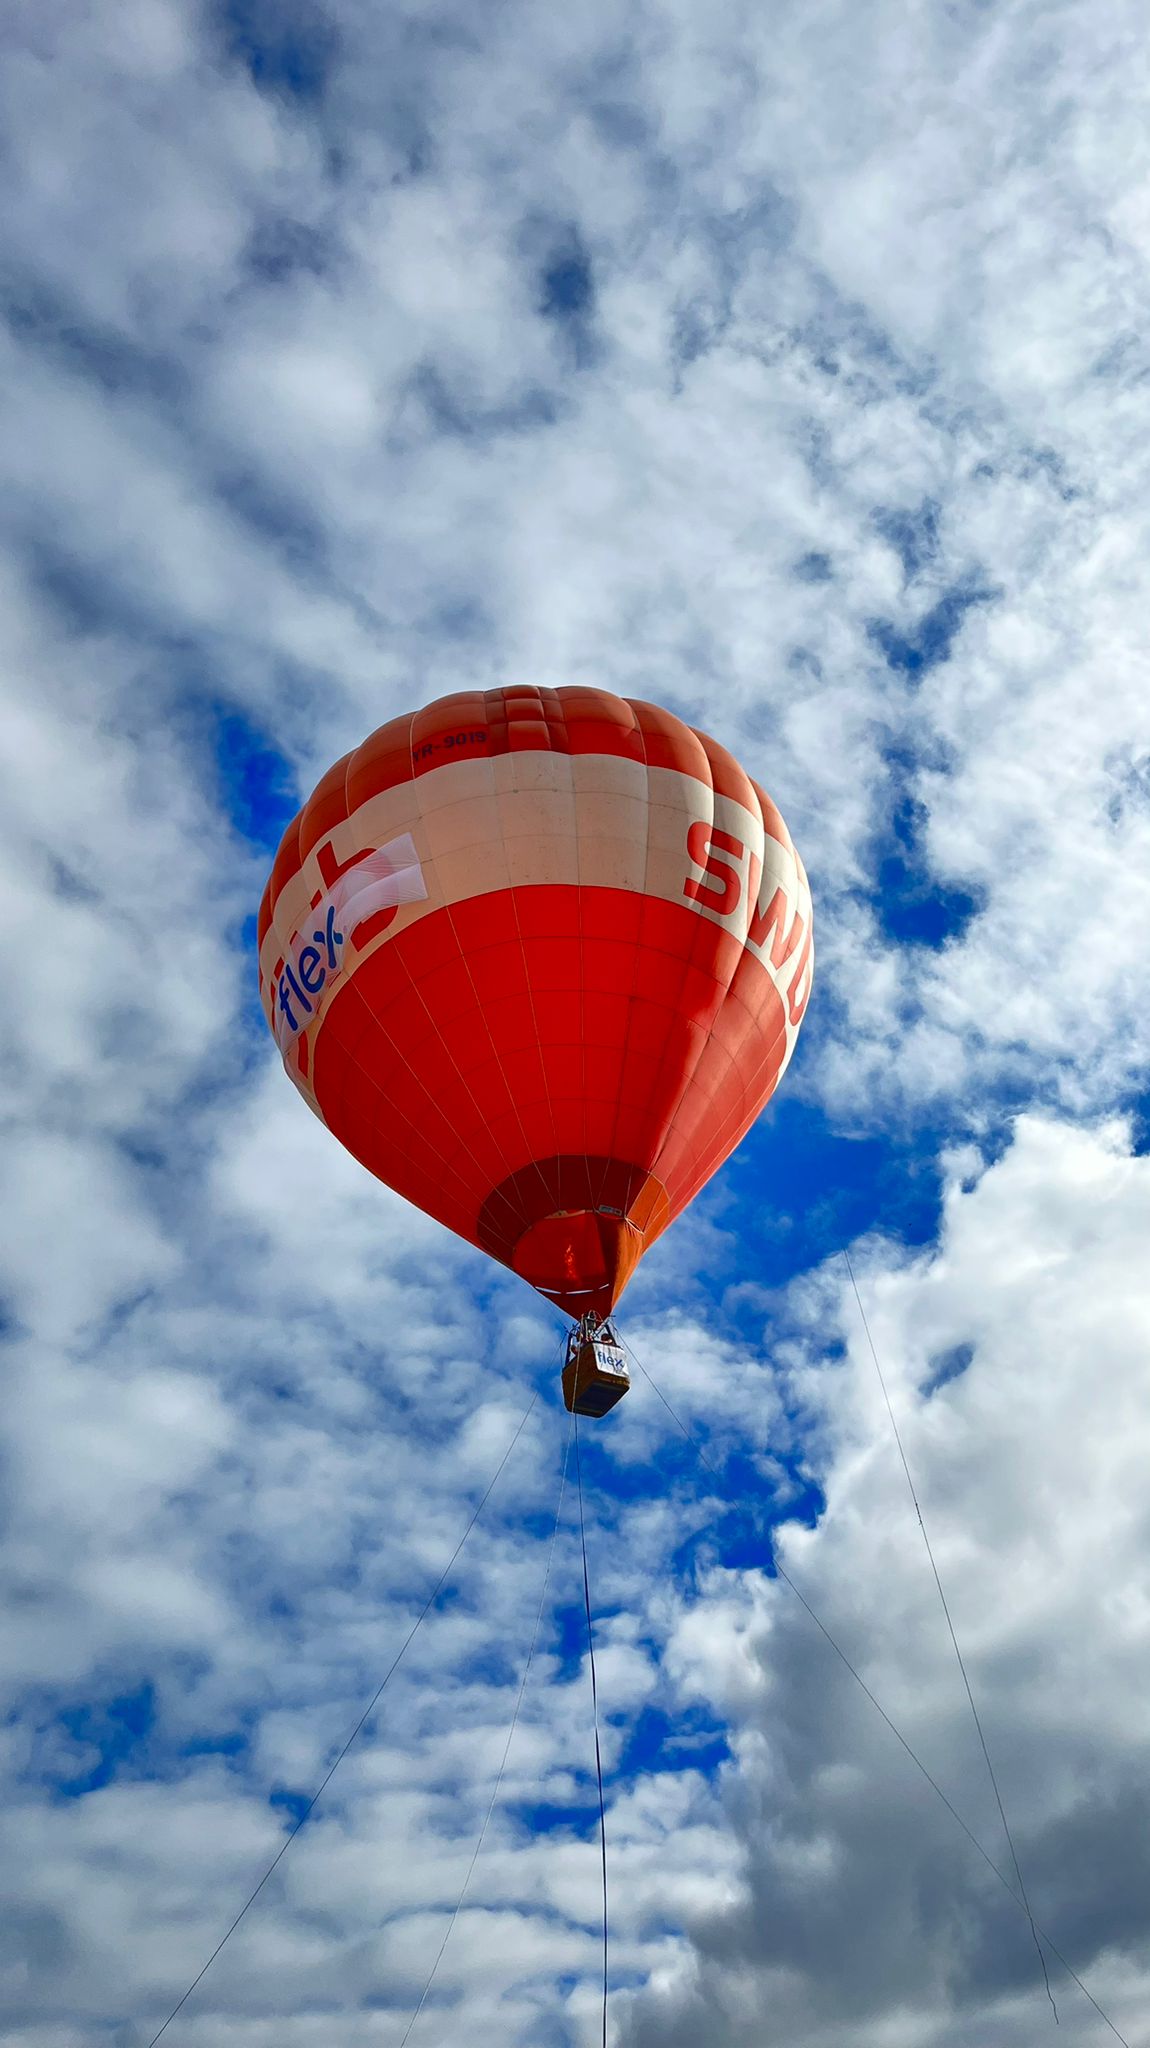 Balon cu aer cald la Flight Festival 2022 Flex Romania